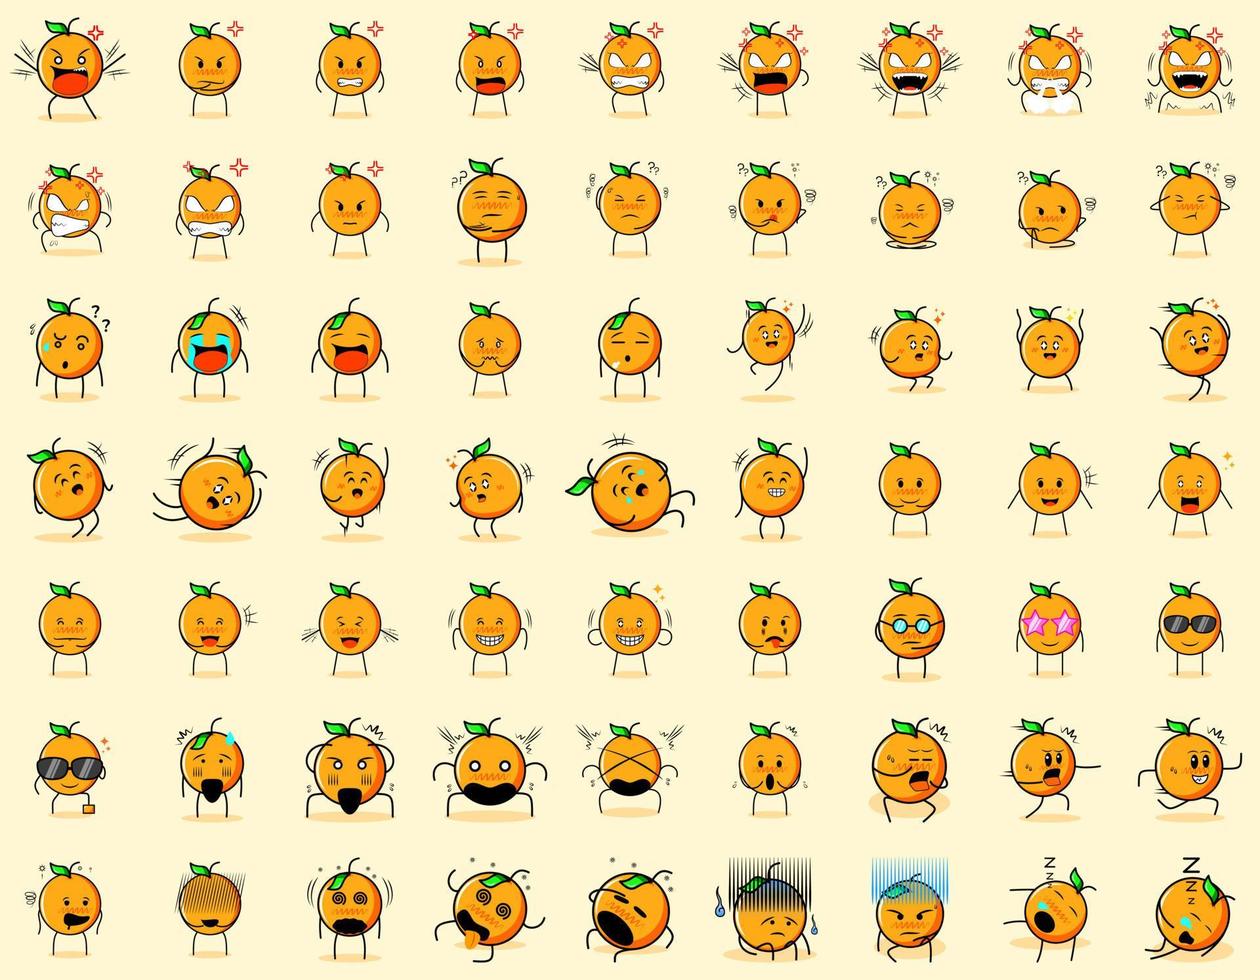 colección de lindos personajes de dibujos animados naranjas con expresión enojada, pensando, llorando, tristes, confundidos, planos, felices, asustados, conmocionados, mareados, sin esperanza, durmiendo. adecuado para emoticonos y mascotas vector